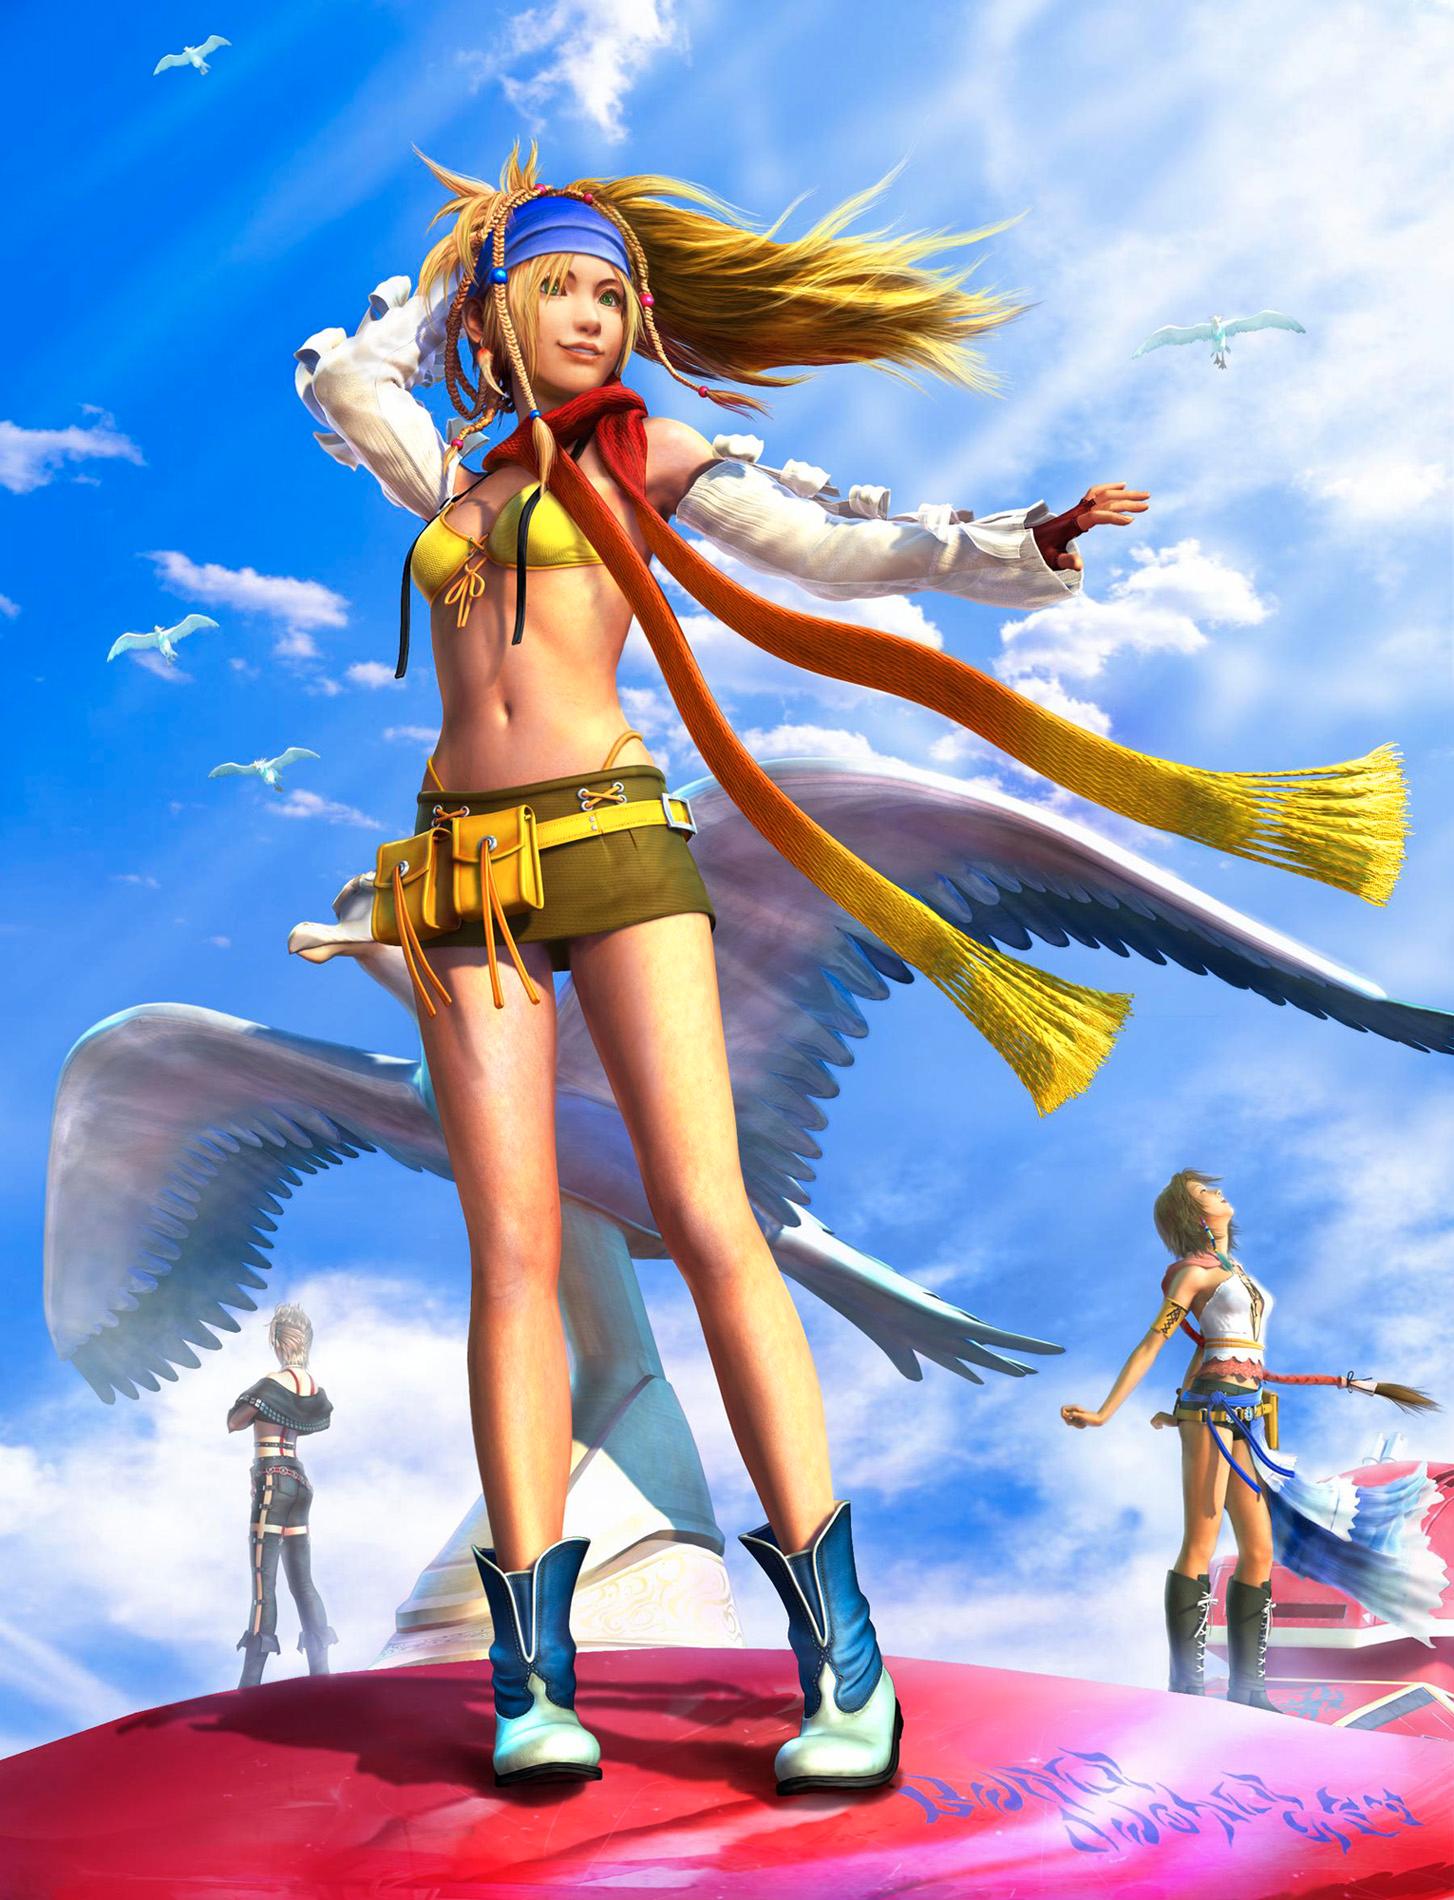 Rikku i ”Final fantasy X-2”.